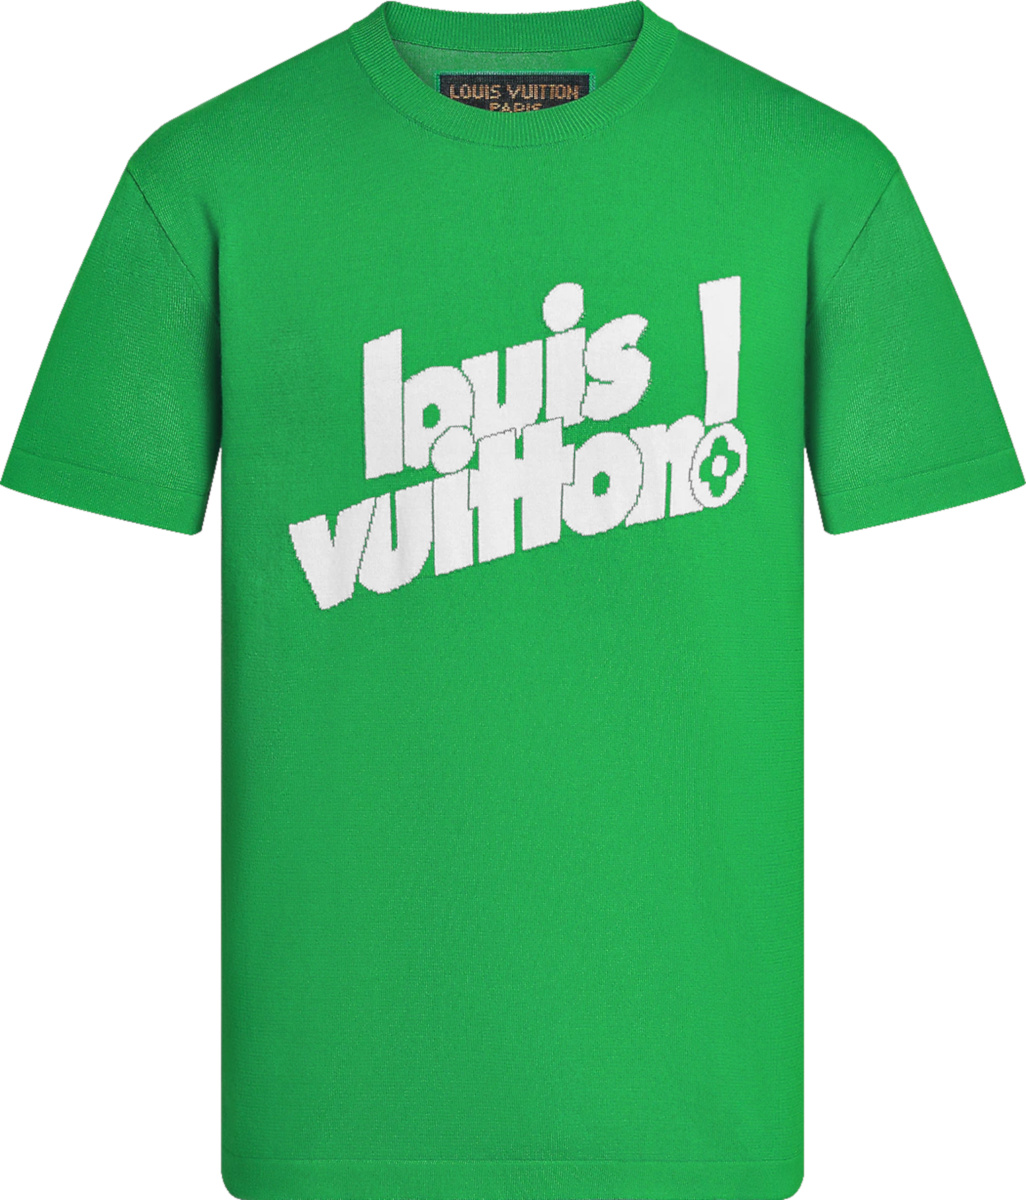 green lv shirt